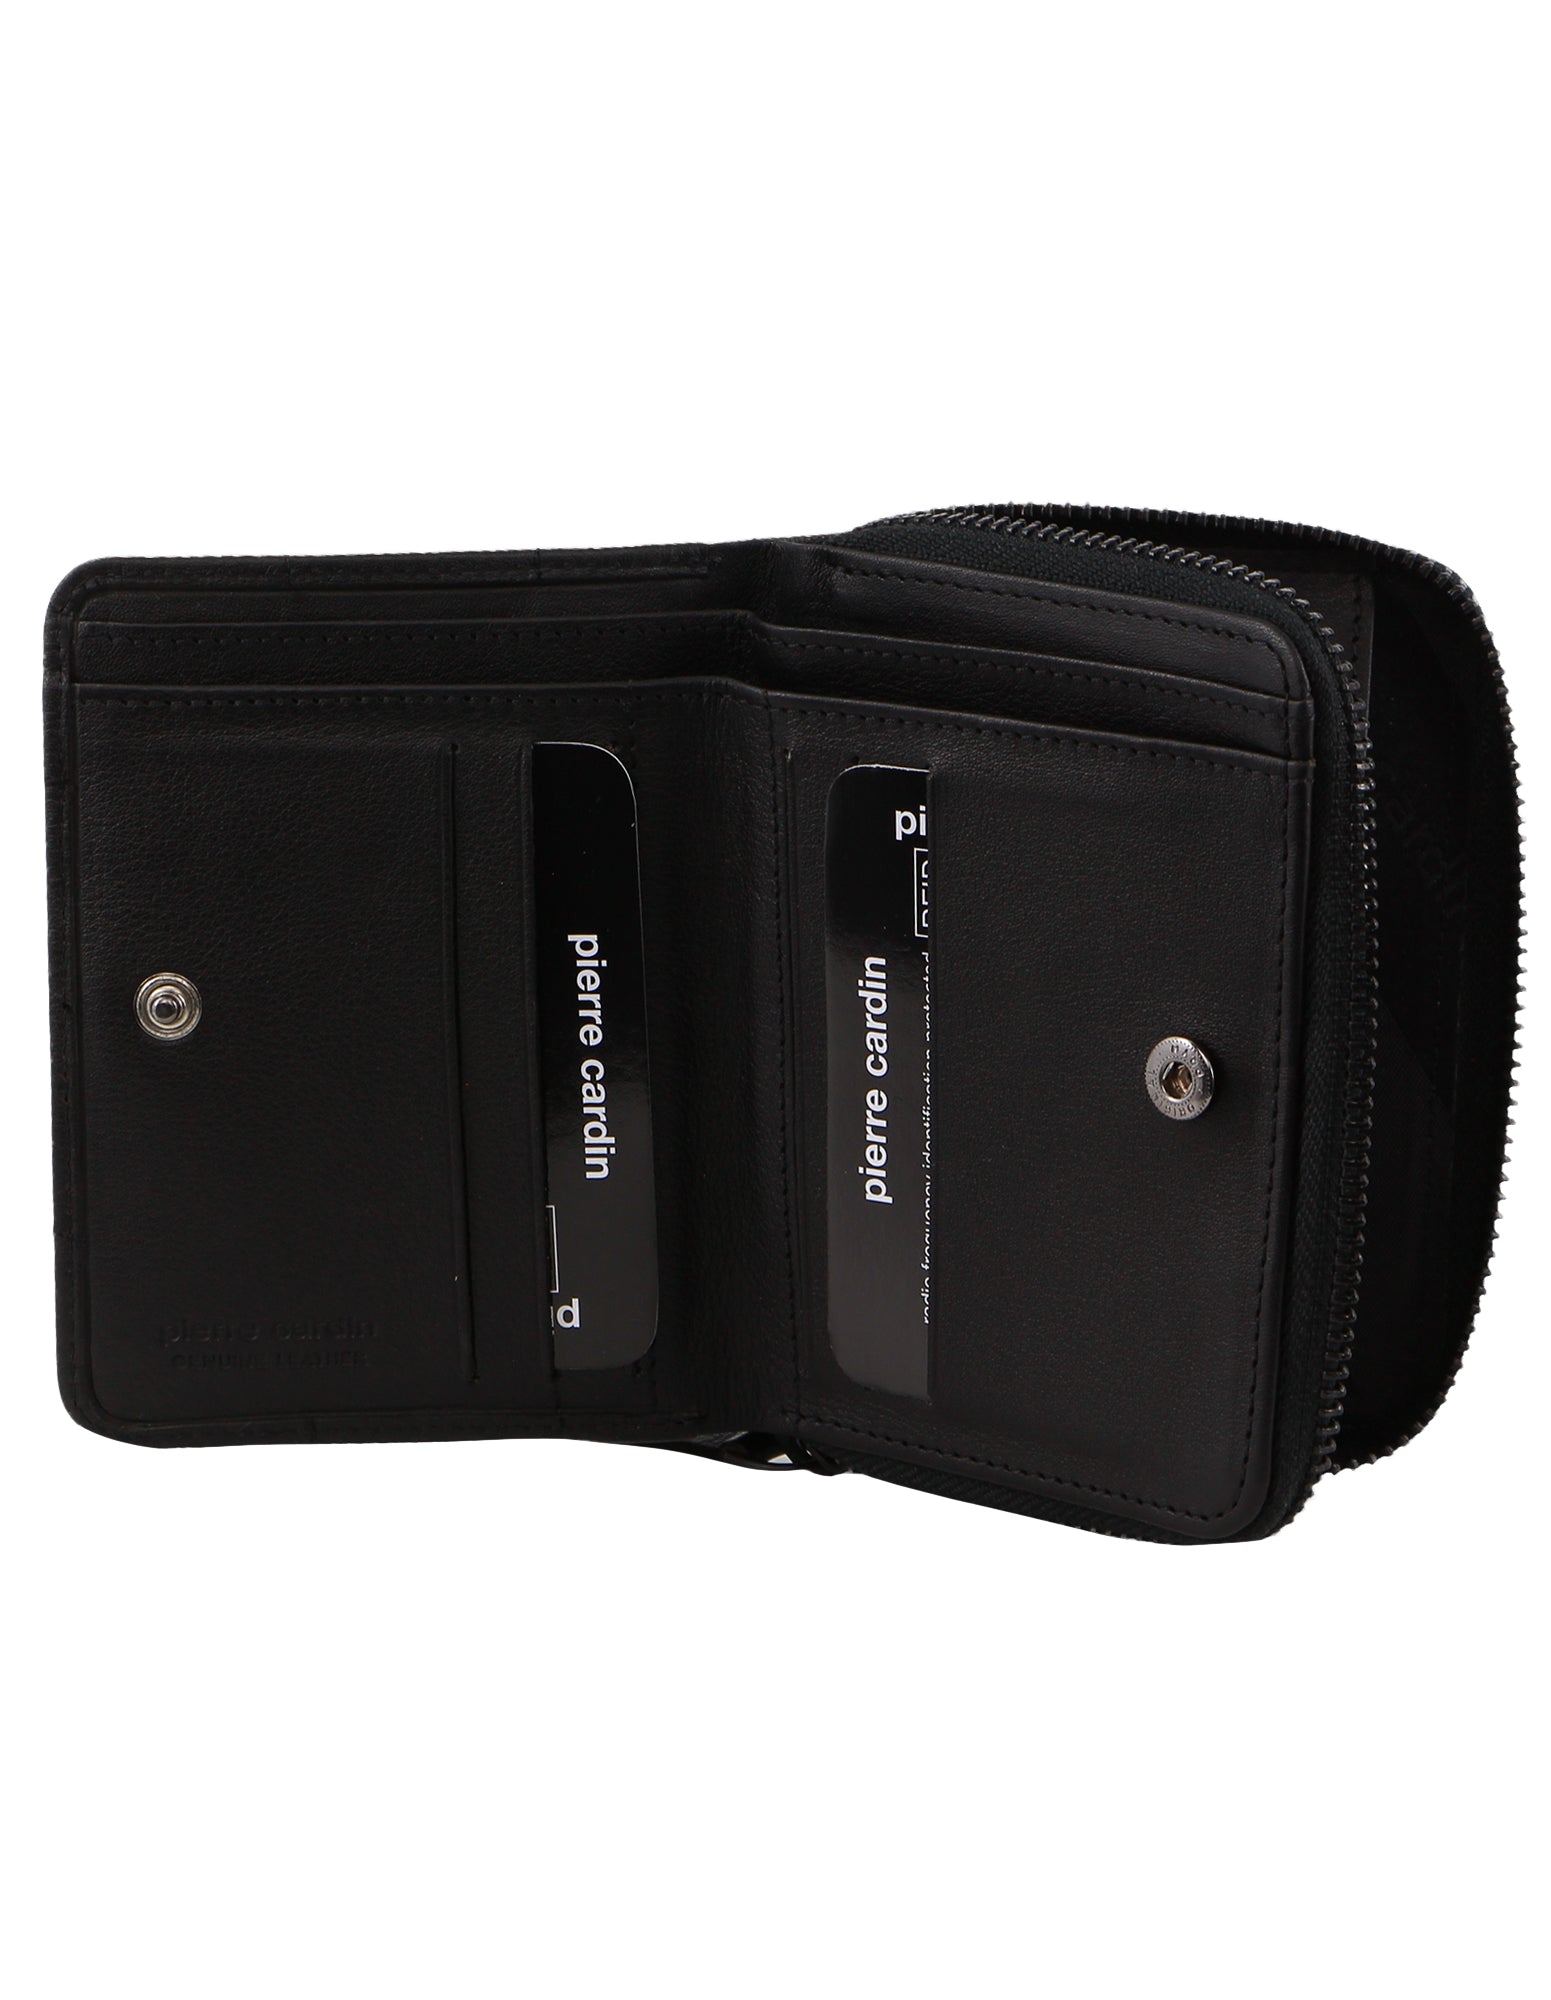 Pierre Cardin Italian Pleated Leather Ladies Press Stud Wallet in Black